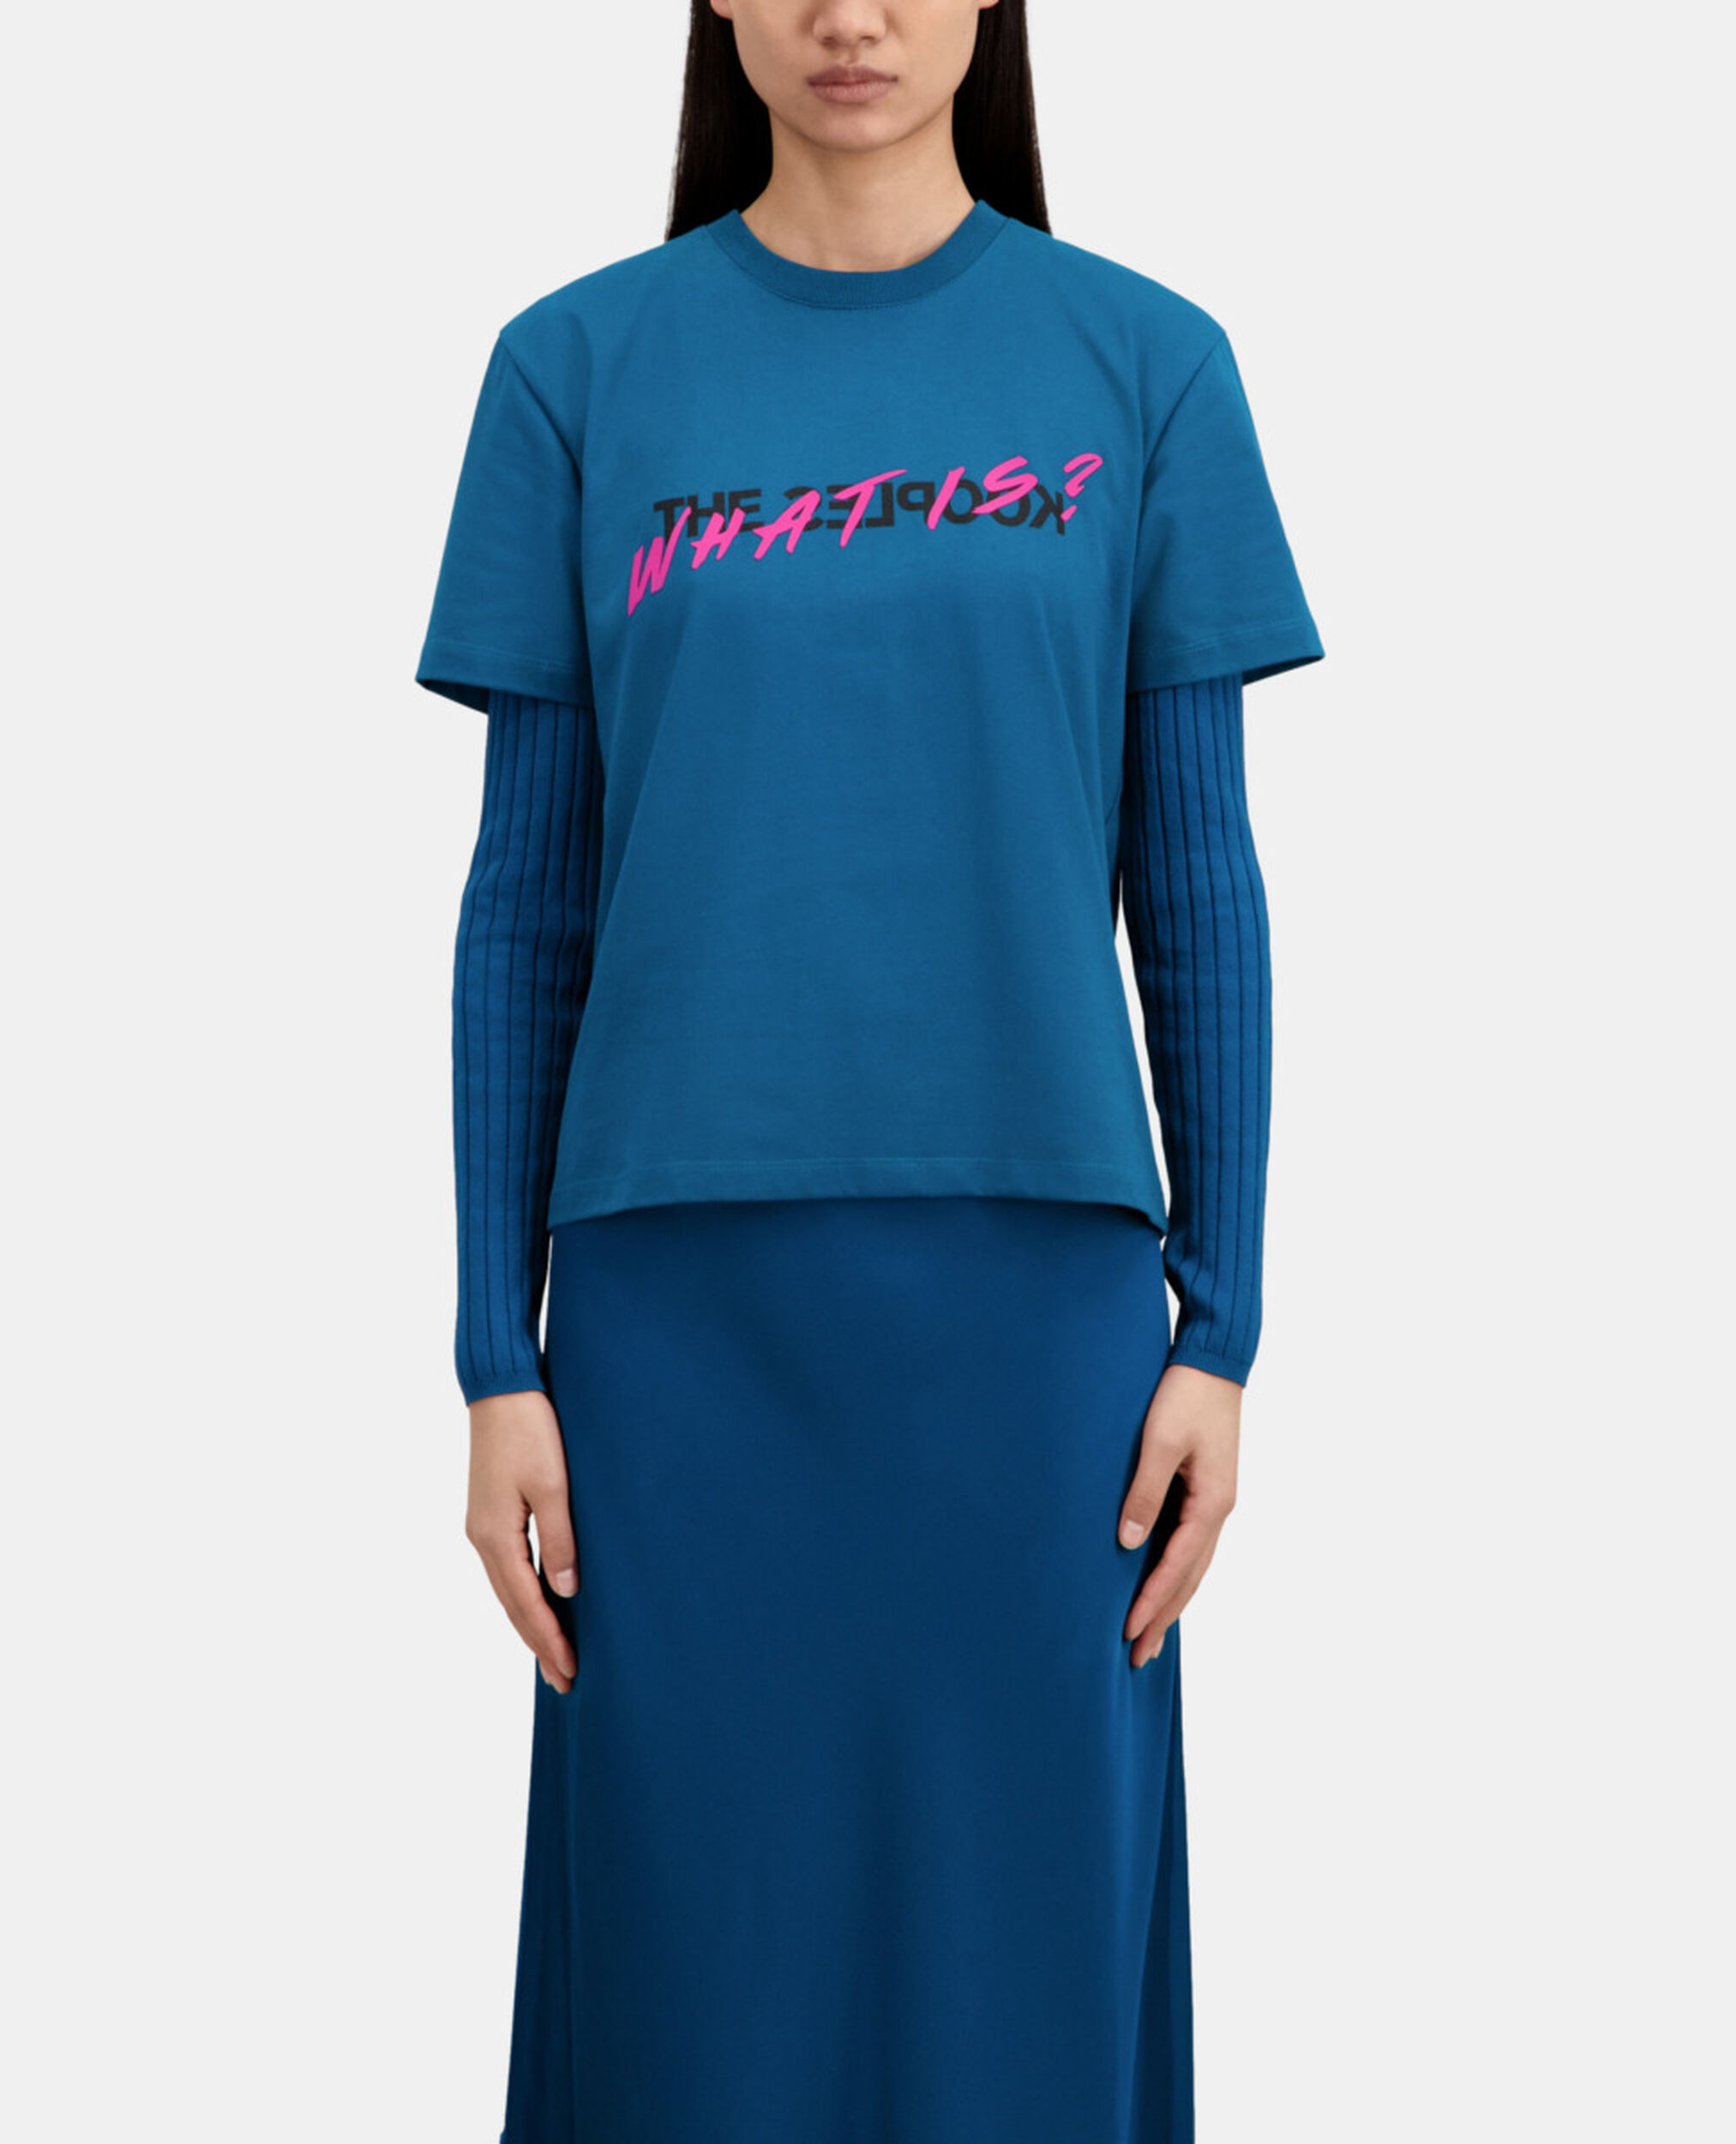 Blaues T-Shirt Damen mit „What is“-Schriftzug, MEDIUM BLUE, hi-res image number null